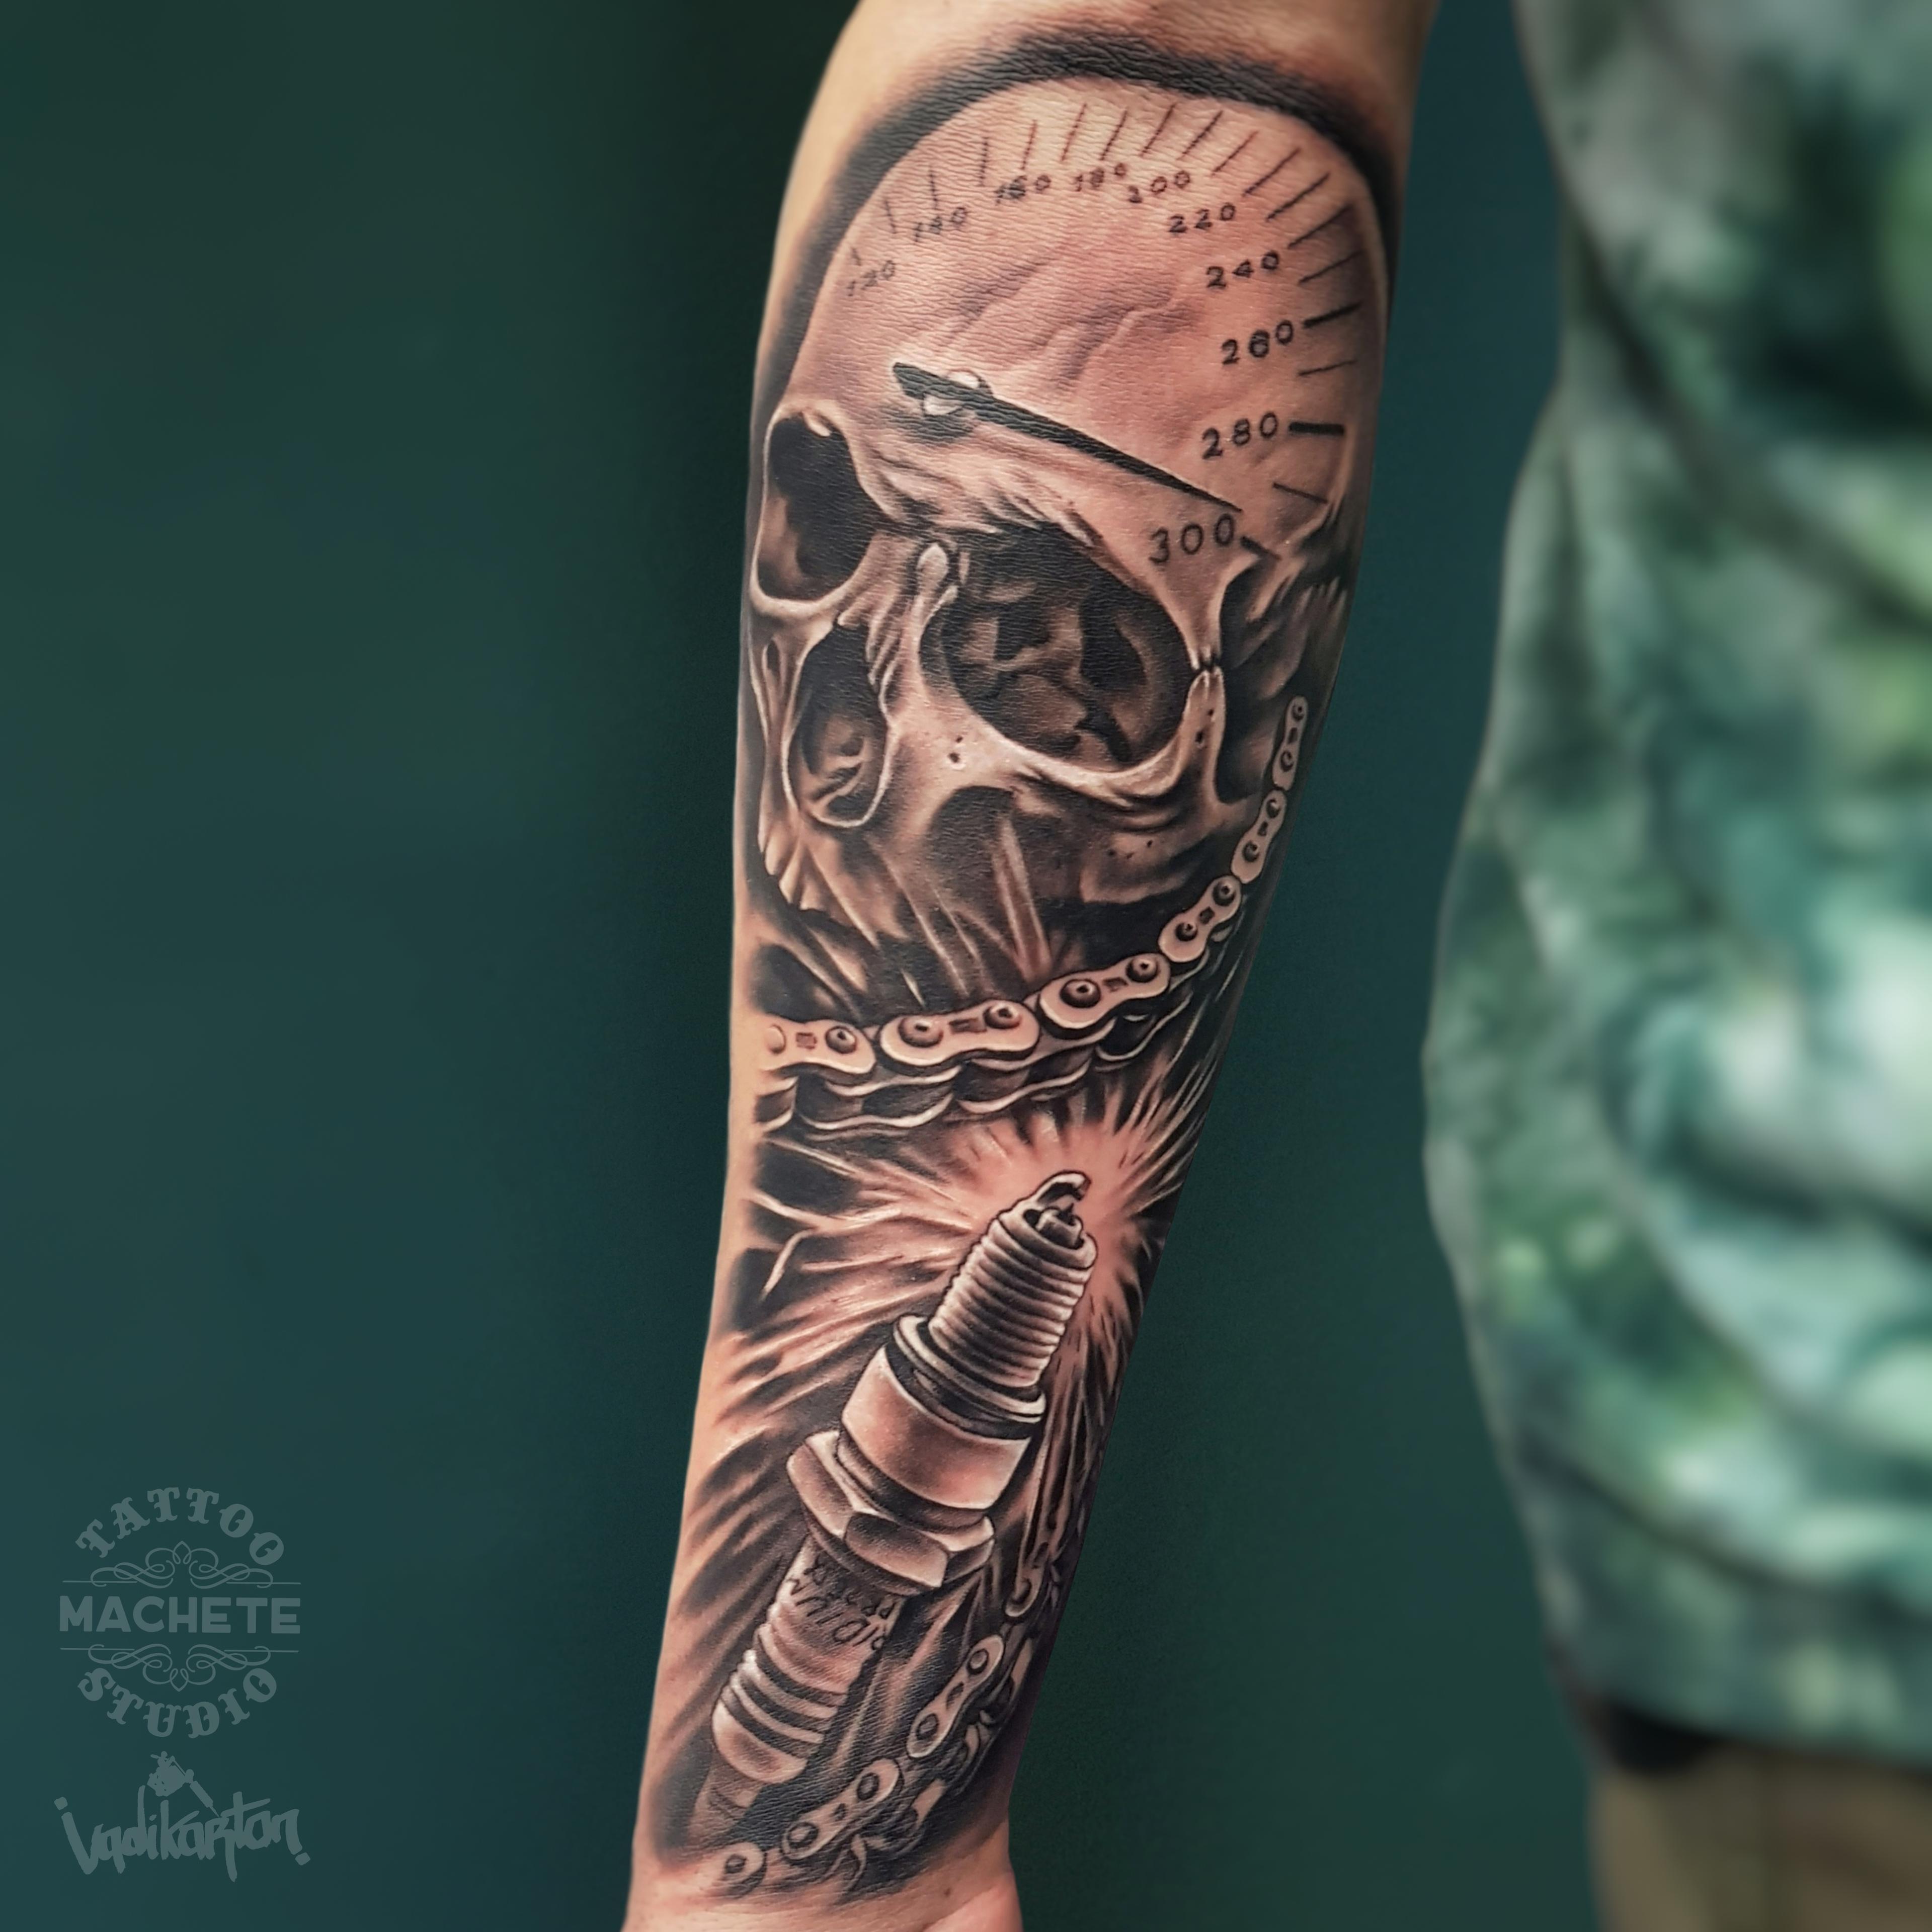 Inksearch tattoo Machete Tattoo Gdynia